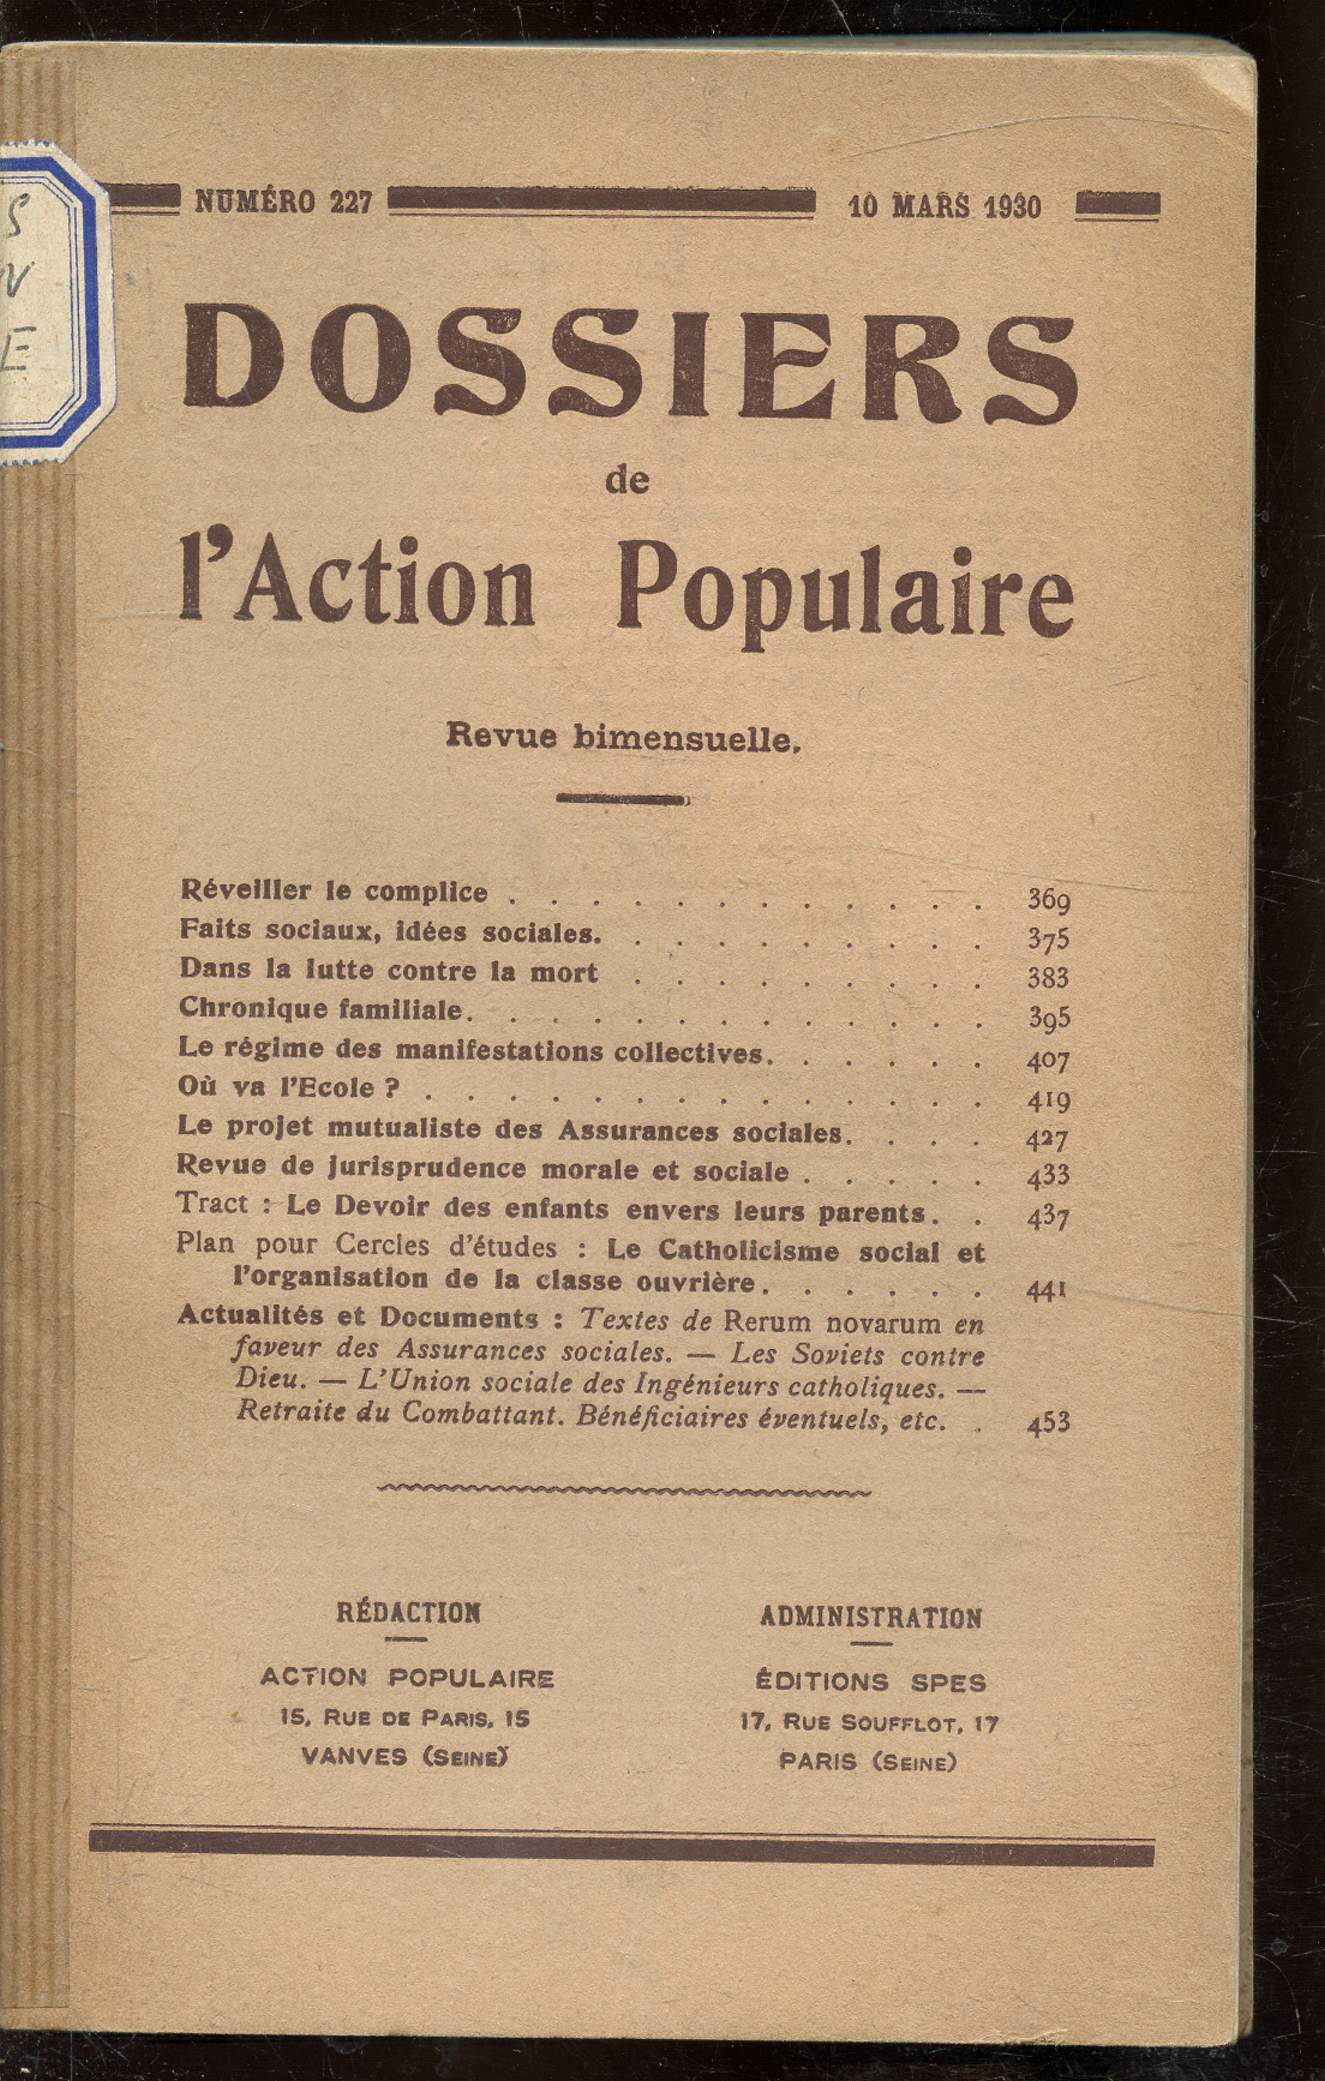 Les dossiers de l'action populaire -du 10 mars 1930 au 25 avril 1930 du numro 227 au numro 331 -